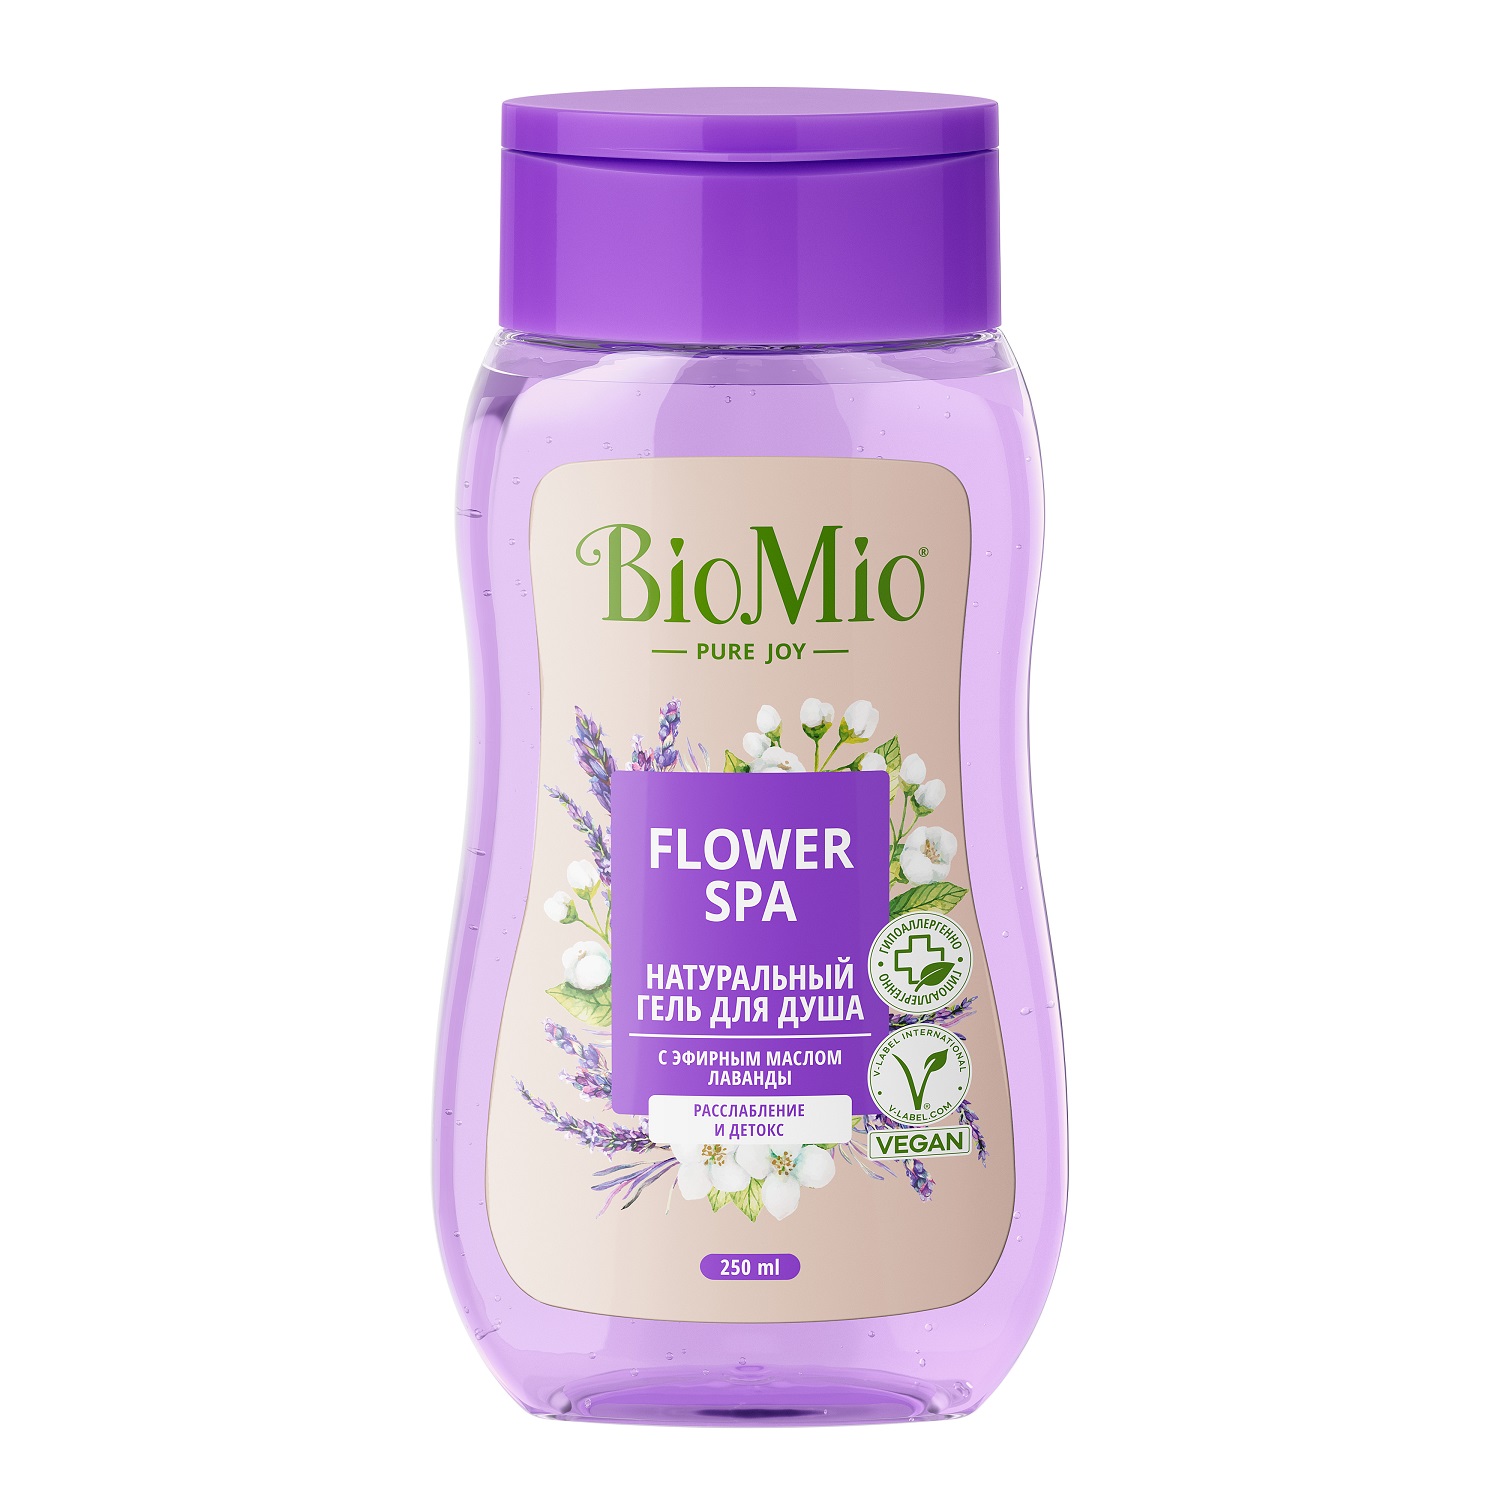 BioMio Гель для душа с эфирными маслами лаванды Flower Spa 3+, 250 мл (BioMio, Для ванны и душа) biomio гель для душа натуральный с эфирным маслом лаванды 650 мл